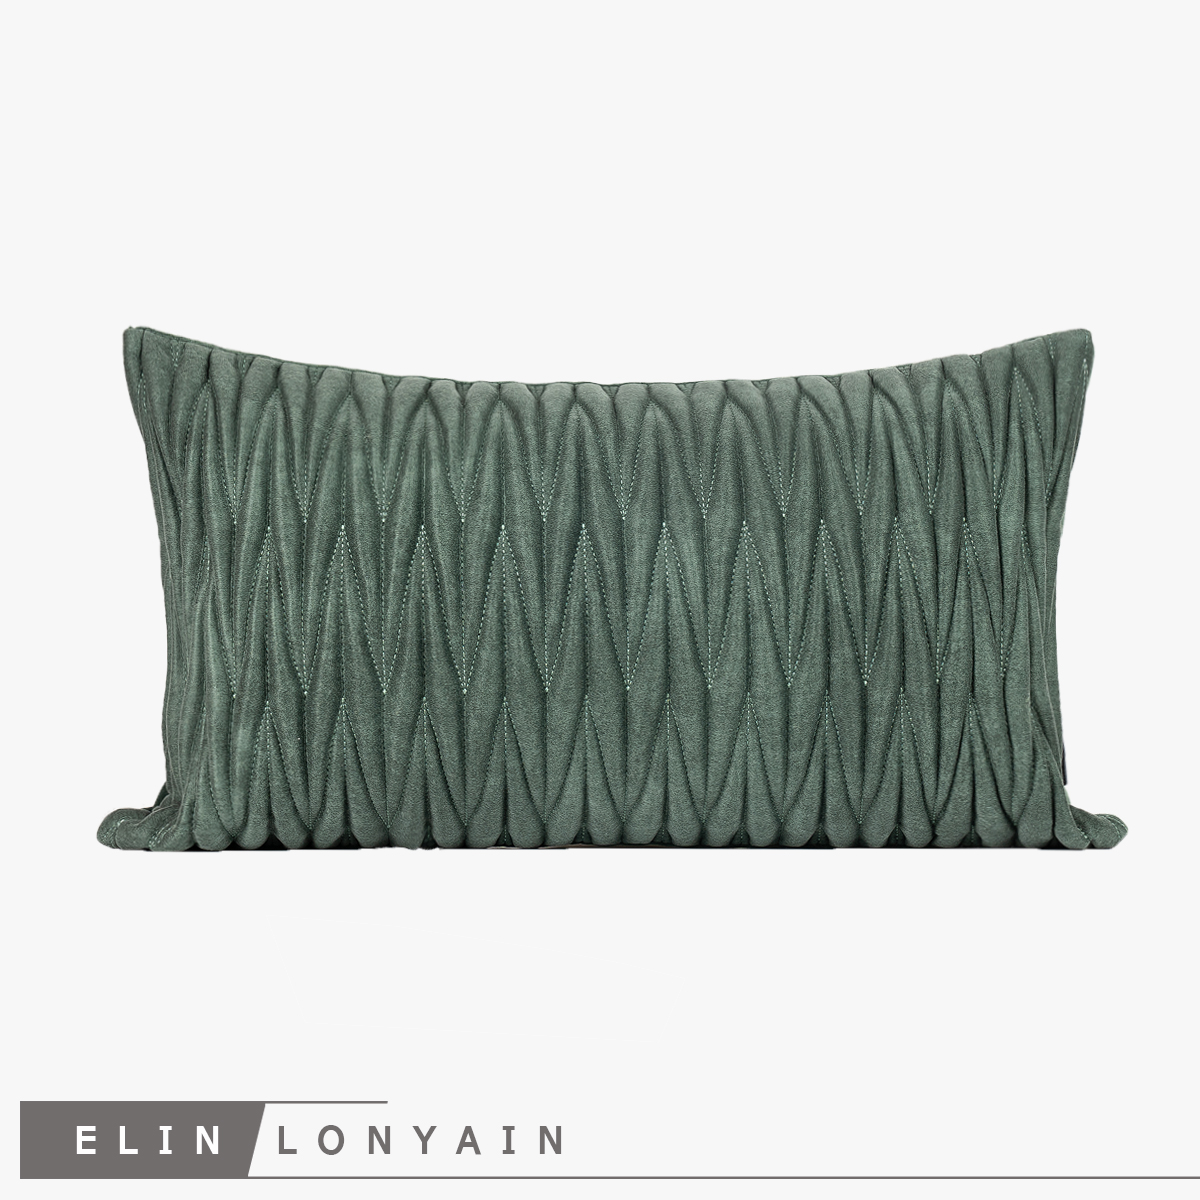 新品现代简约轻奢灰绿色几何图案绗缝绣花靠垫抱枕别墅样板房腰枕